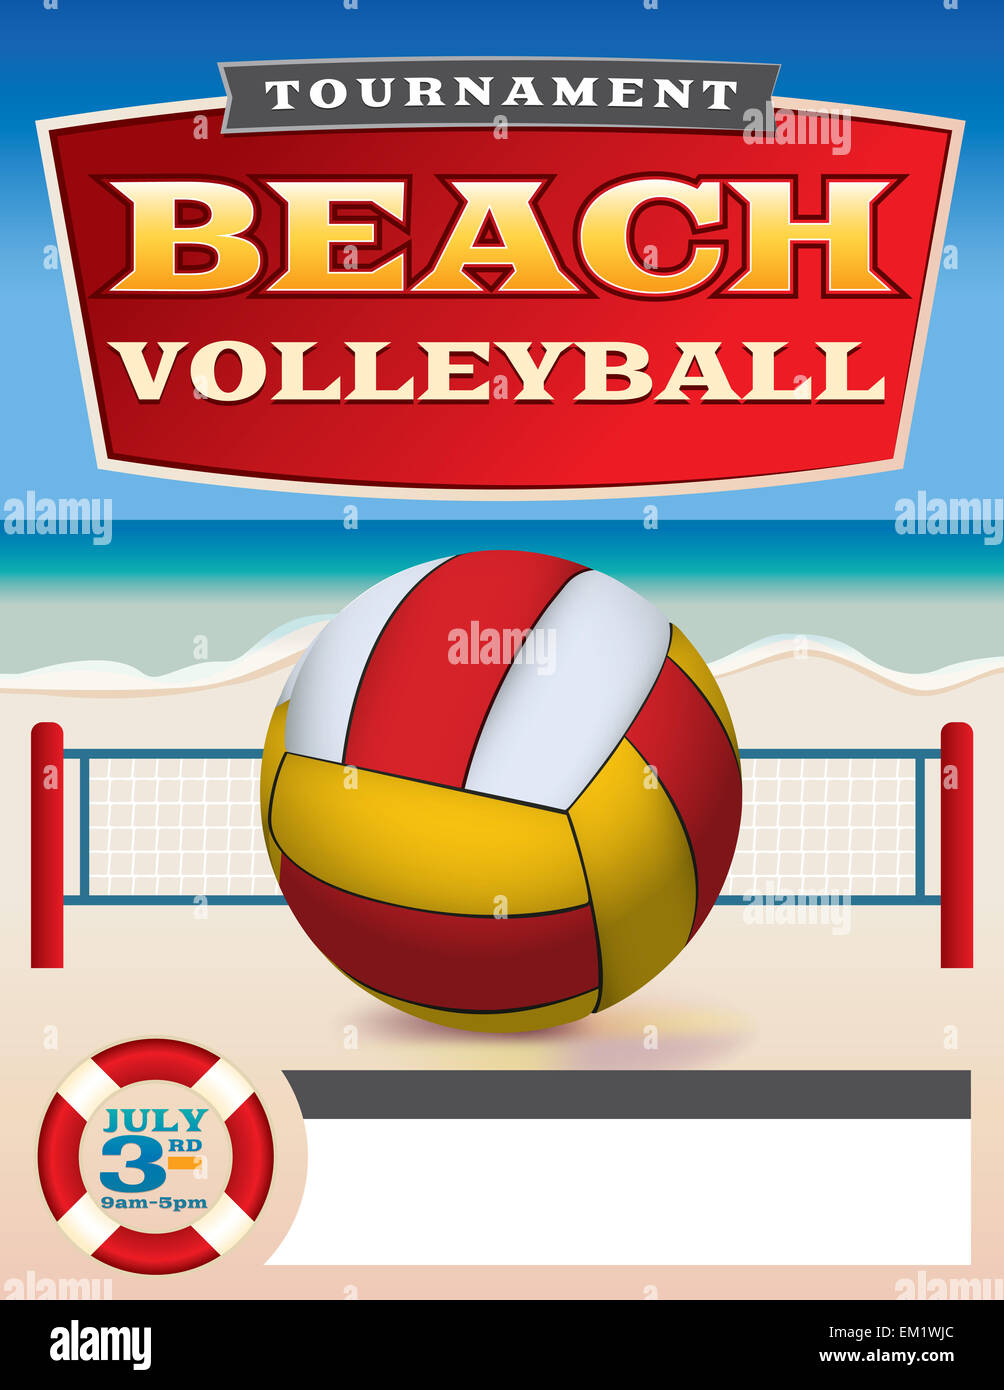 Un modèle d'affiche pour un tournoi de beach volley. Banque D'Images